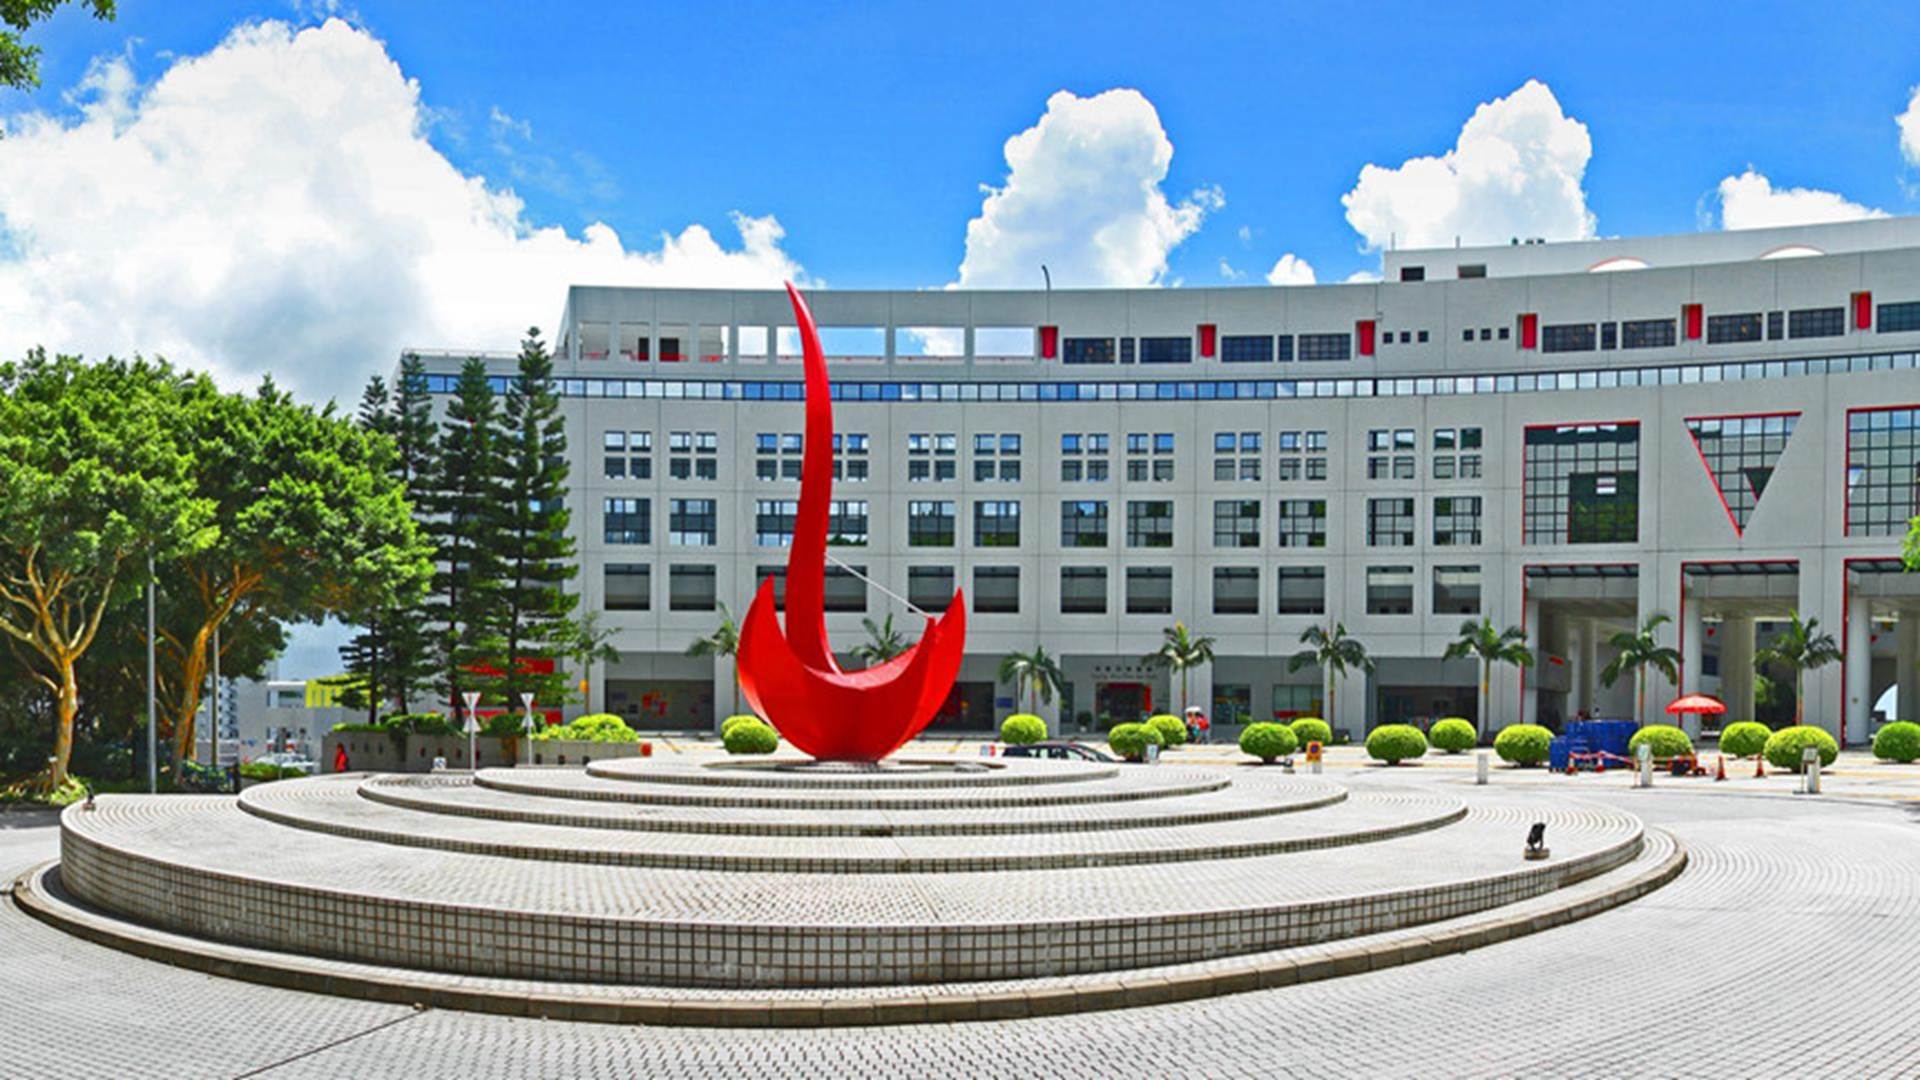 Trung Quốc dẫn đầu bảng xếp hạng trường đại học tốt nhất châu Á 2019-3